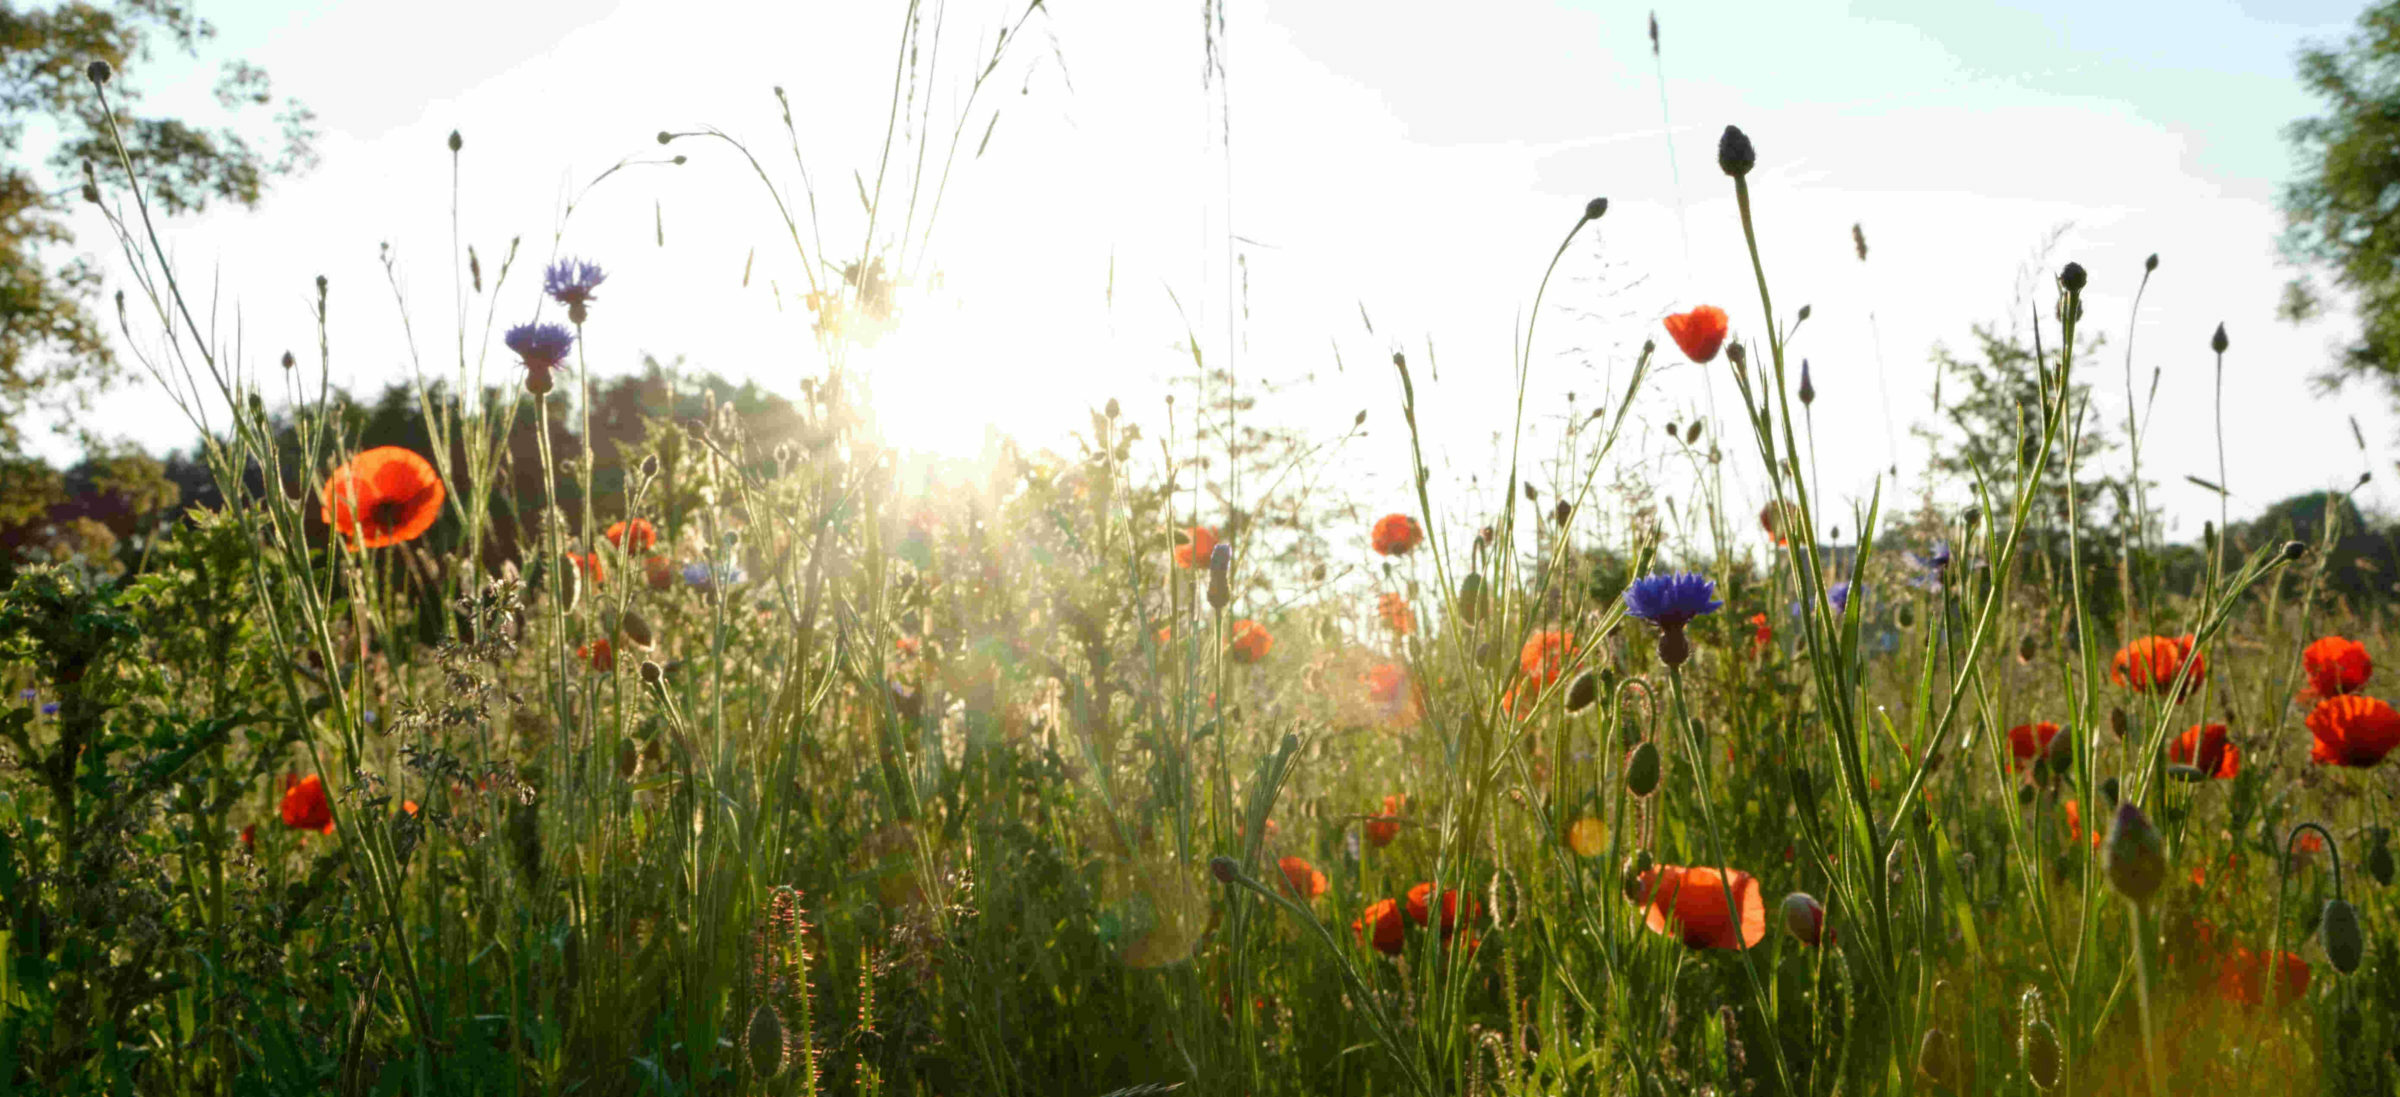 Foto von einer Blumenwiese voller wildgewachsener Mohn- und Kornblumen.